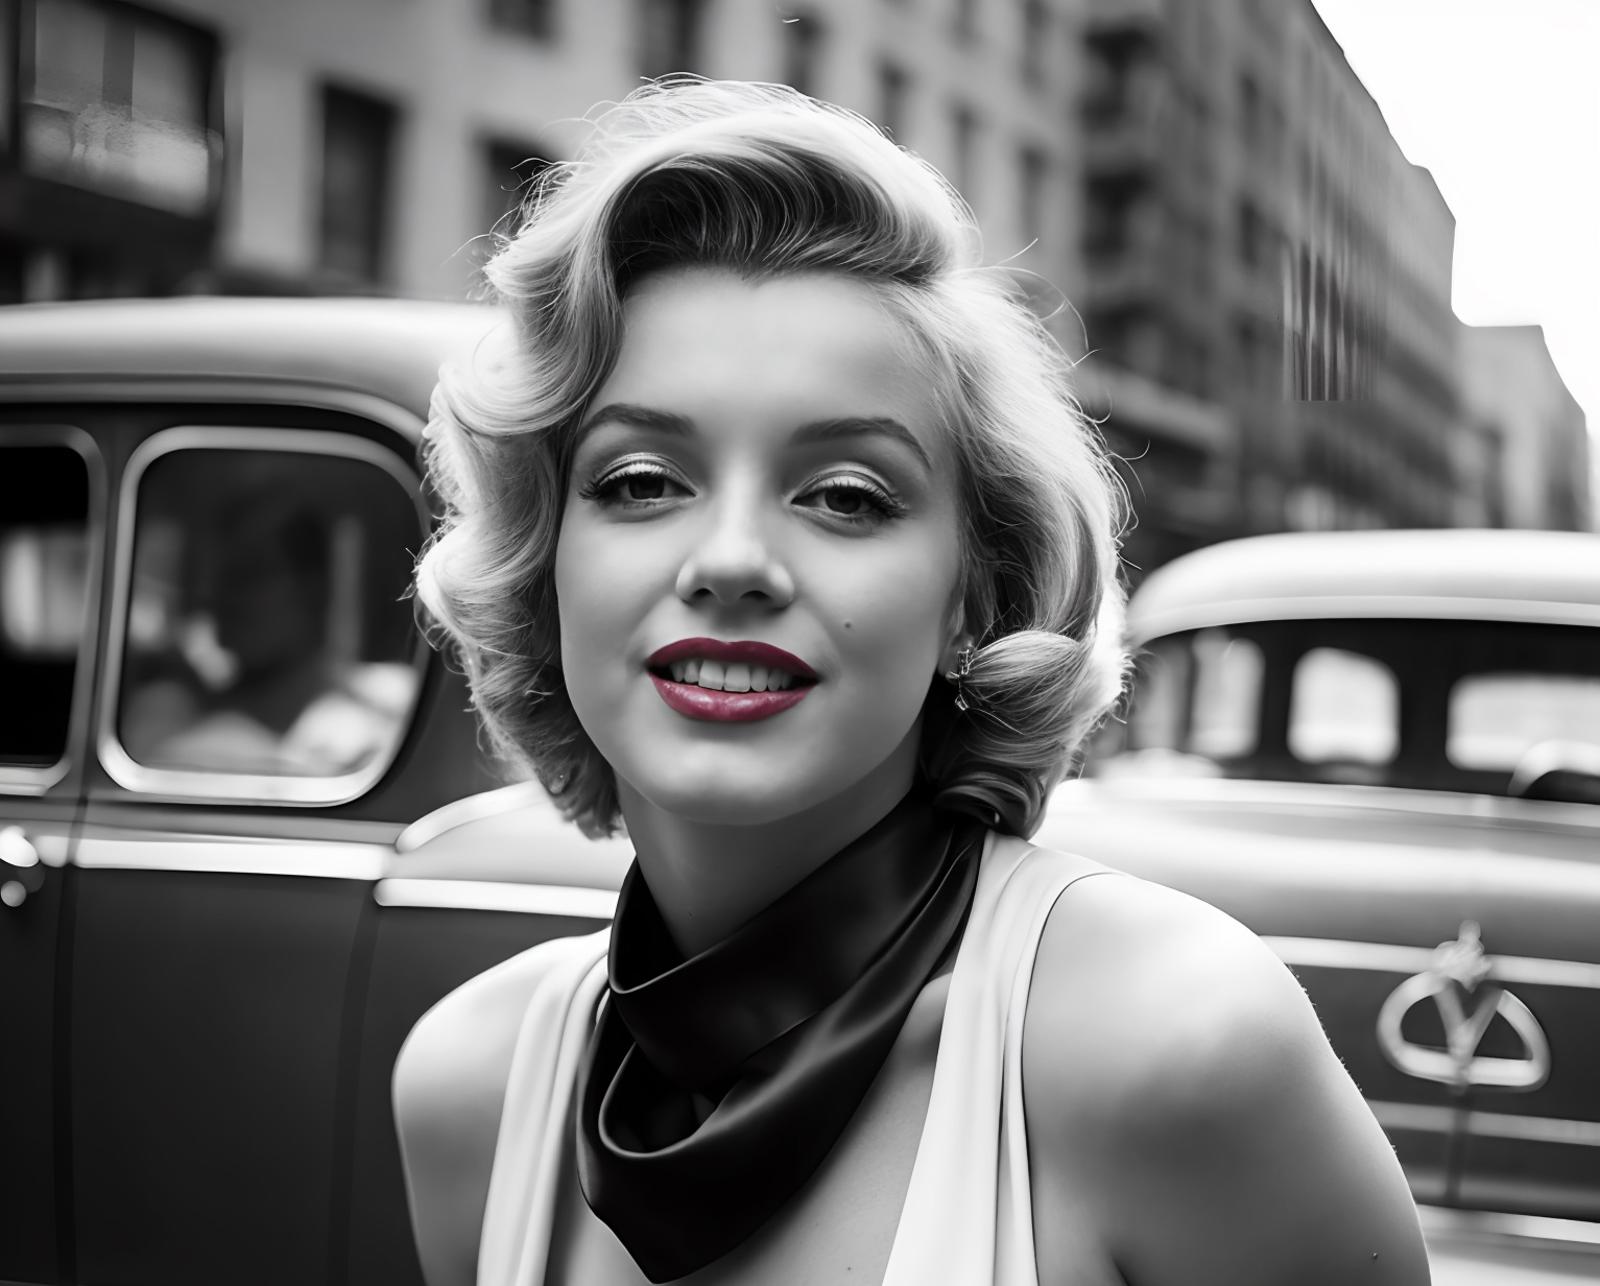 Marilyn Monroe image by Jentix